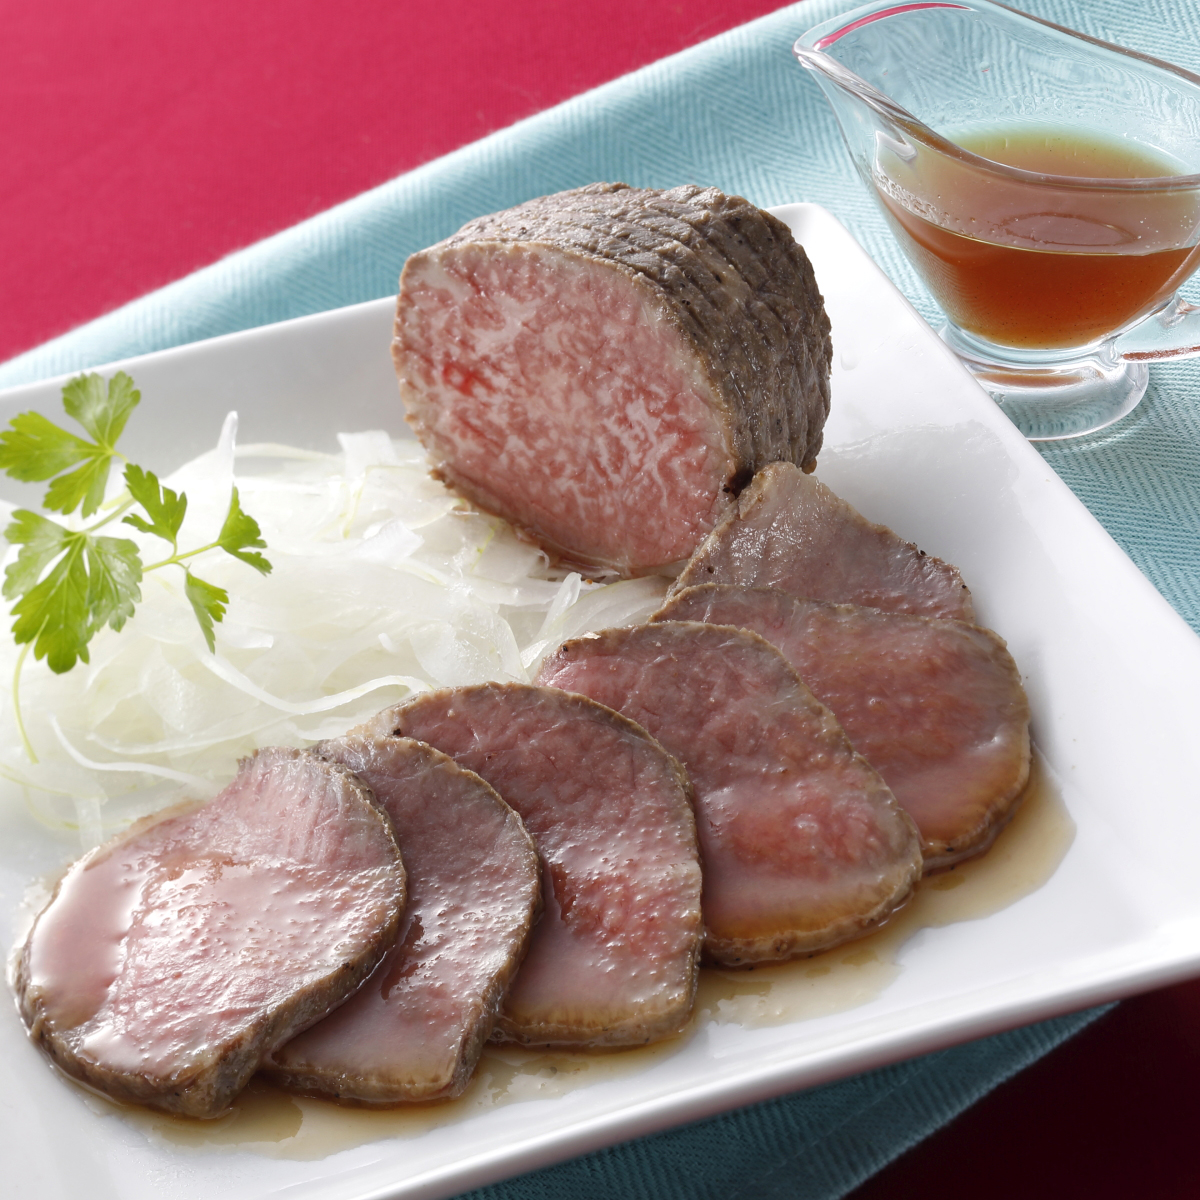 【産直】大阪　洋食屋さん「REVO」黒毛和牛A4ランク以上ローストビーフ